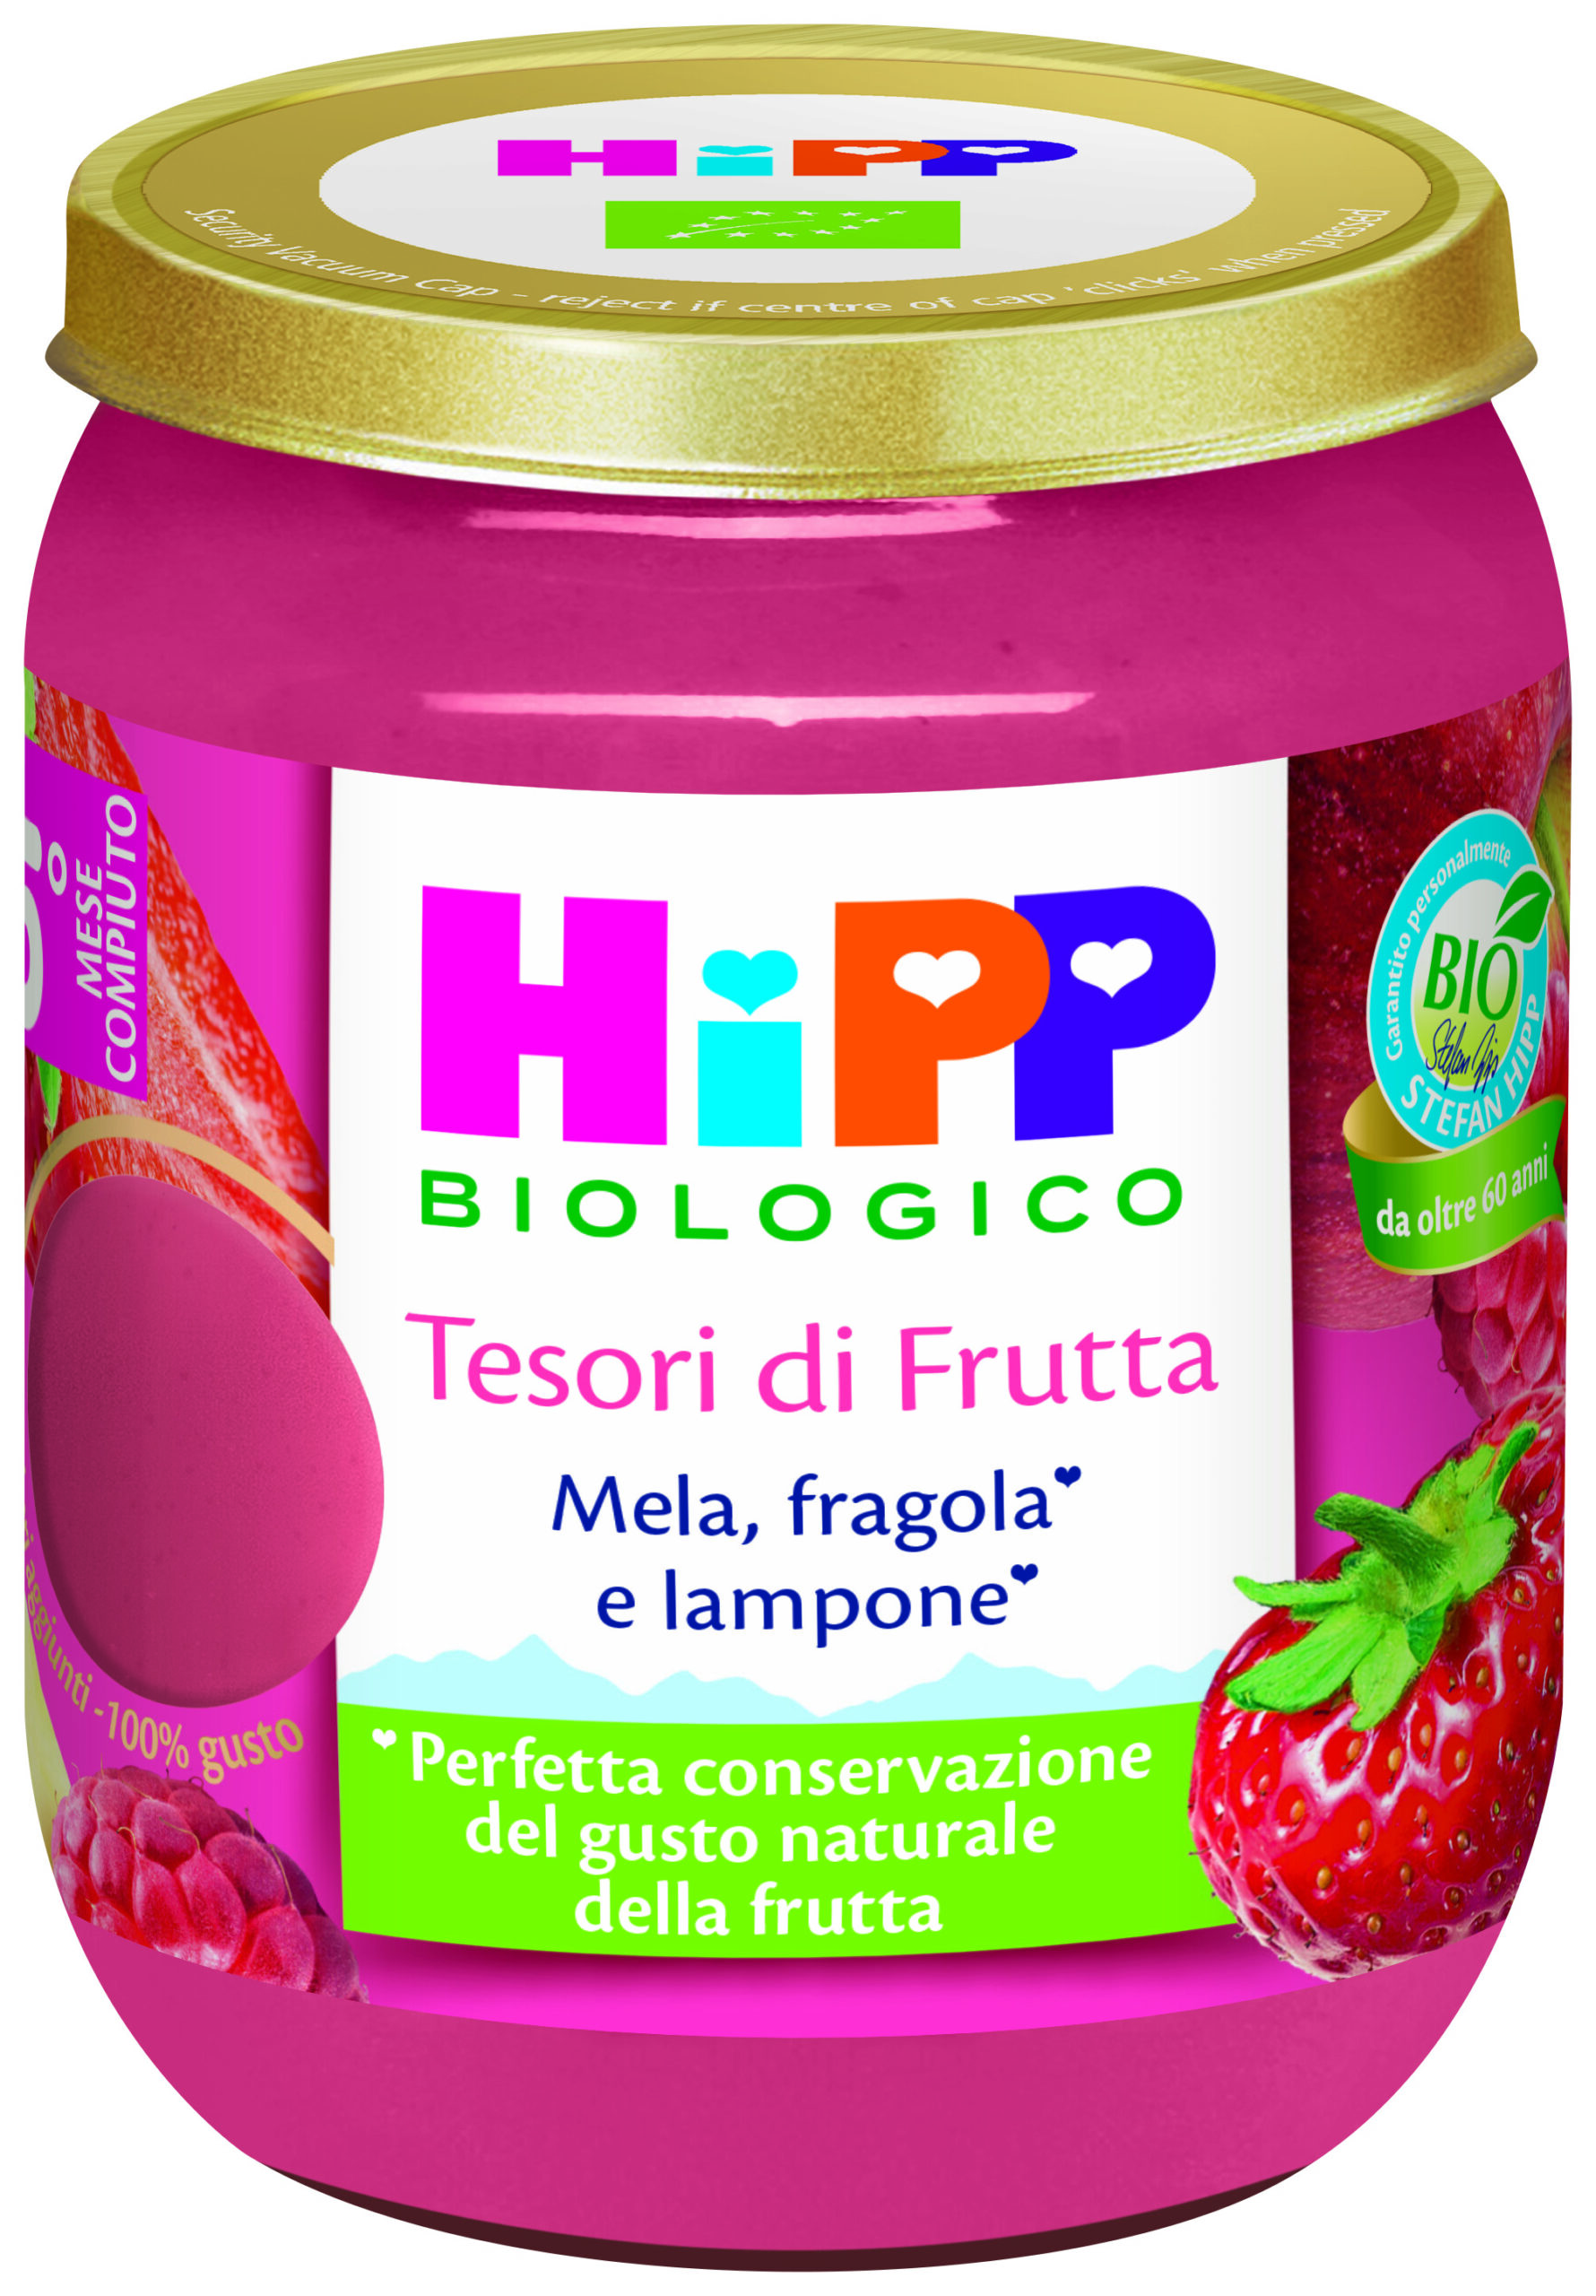 Hipp tesori di frutta mela, fragola e lampone - Hipp